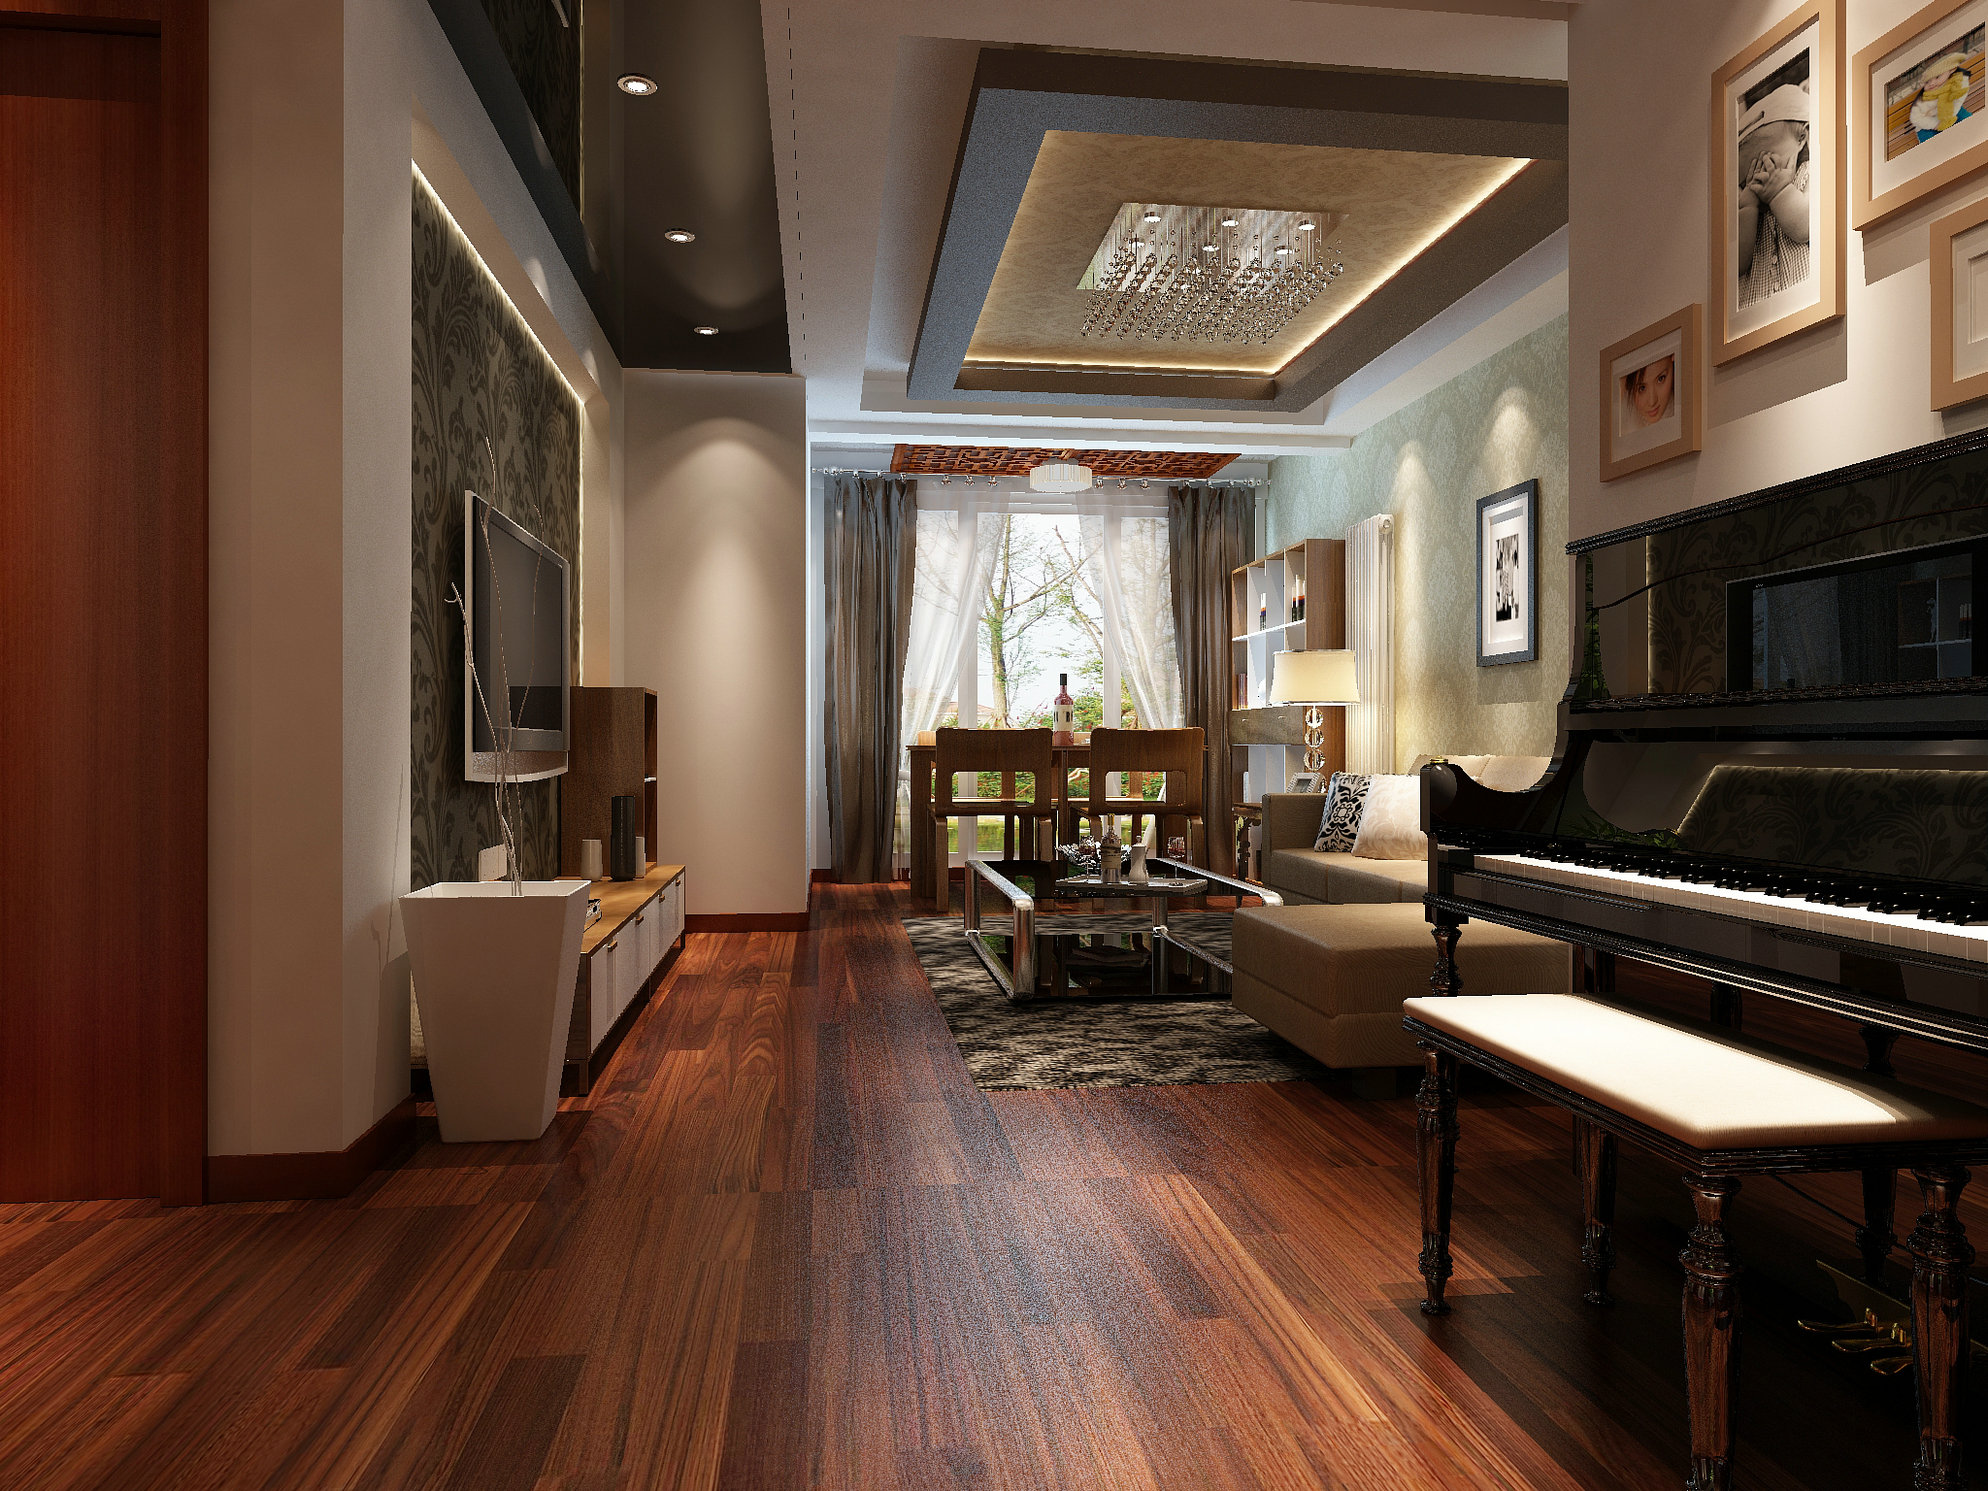 本案设计为简约中式风格,宽敞舒适的客厅配合深色地板卓显稳健,浅咖色